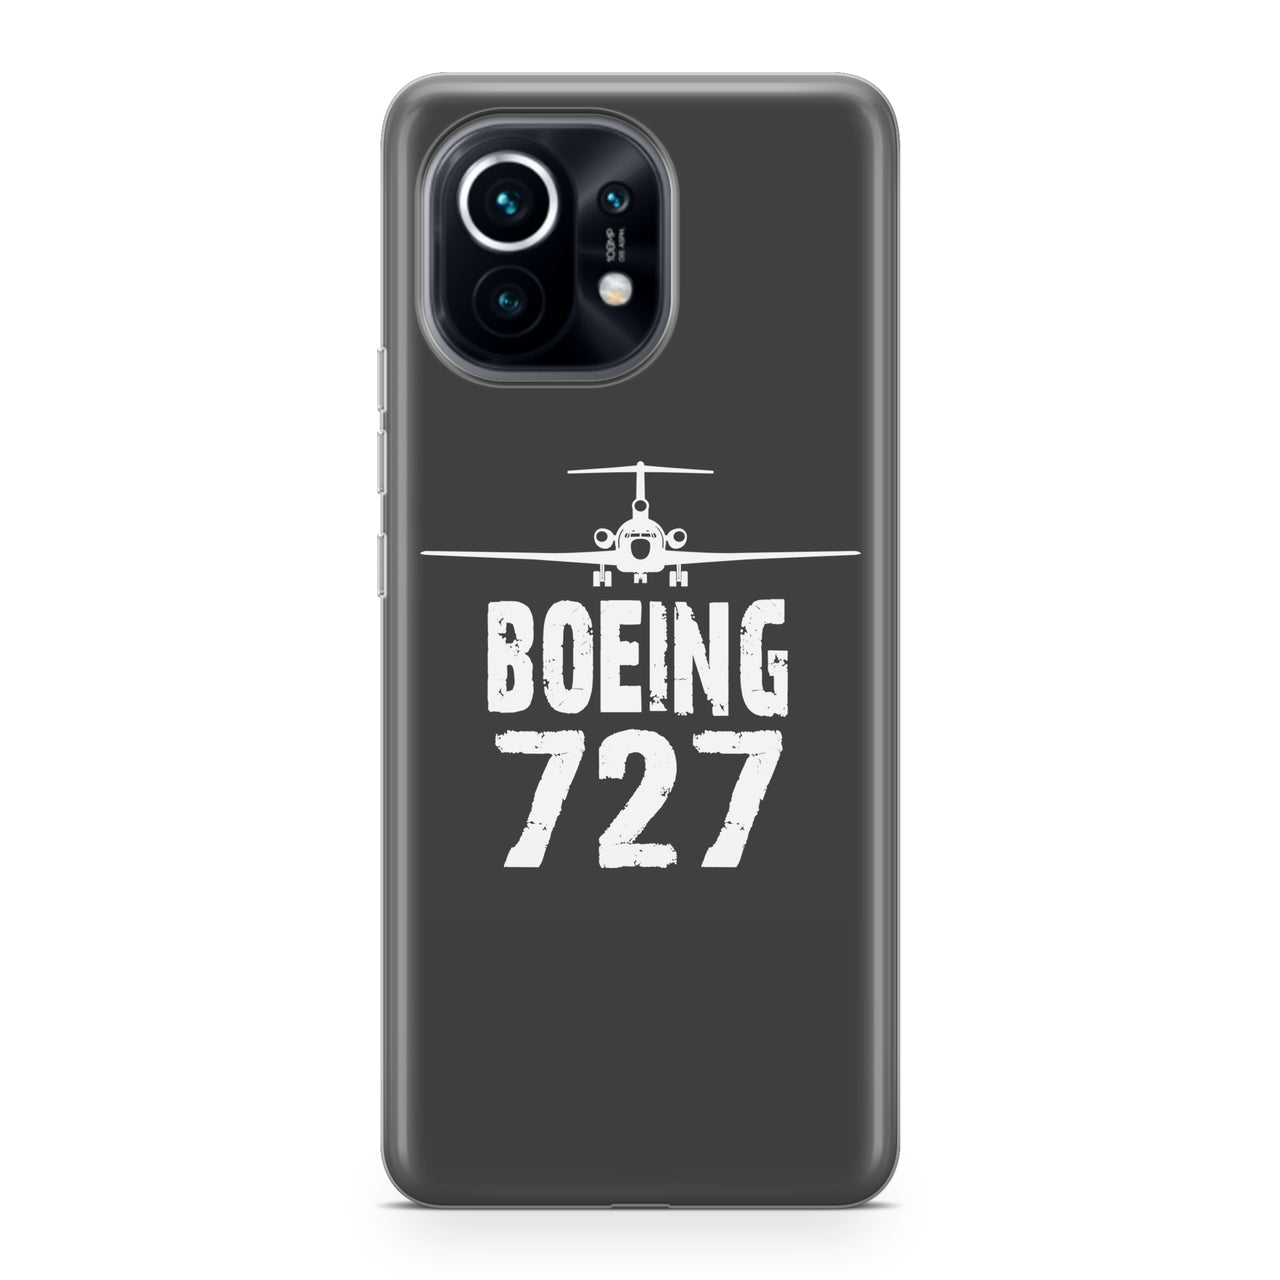 Boeing 727 & Plane Designed Xiaomi Cases